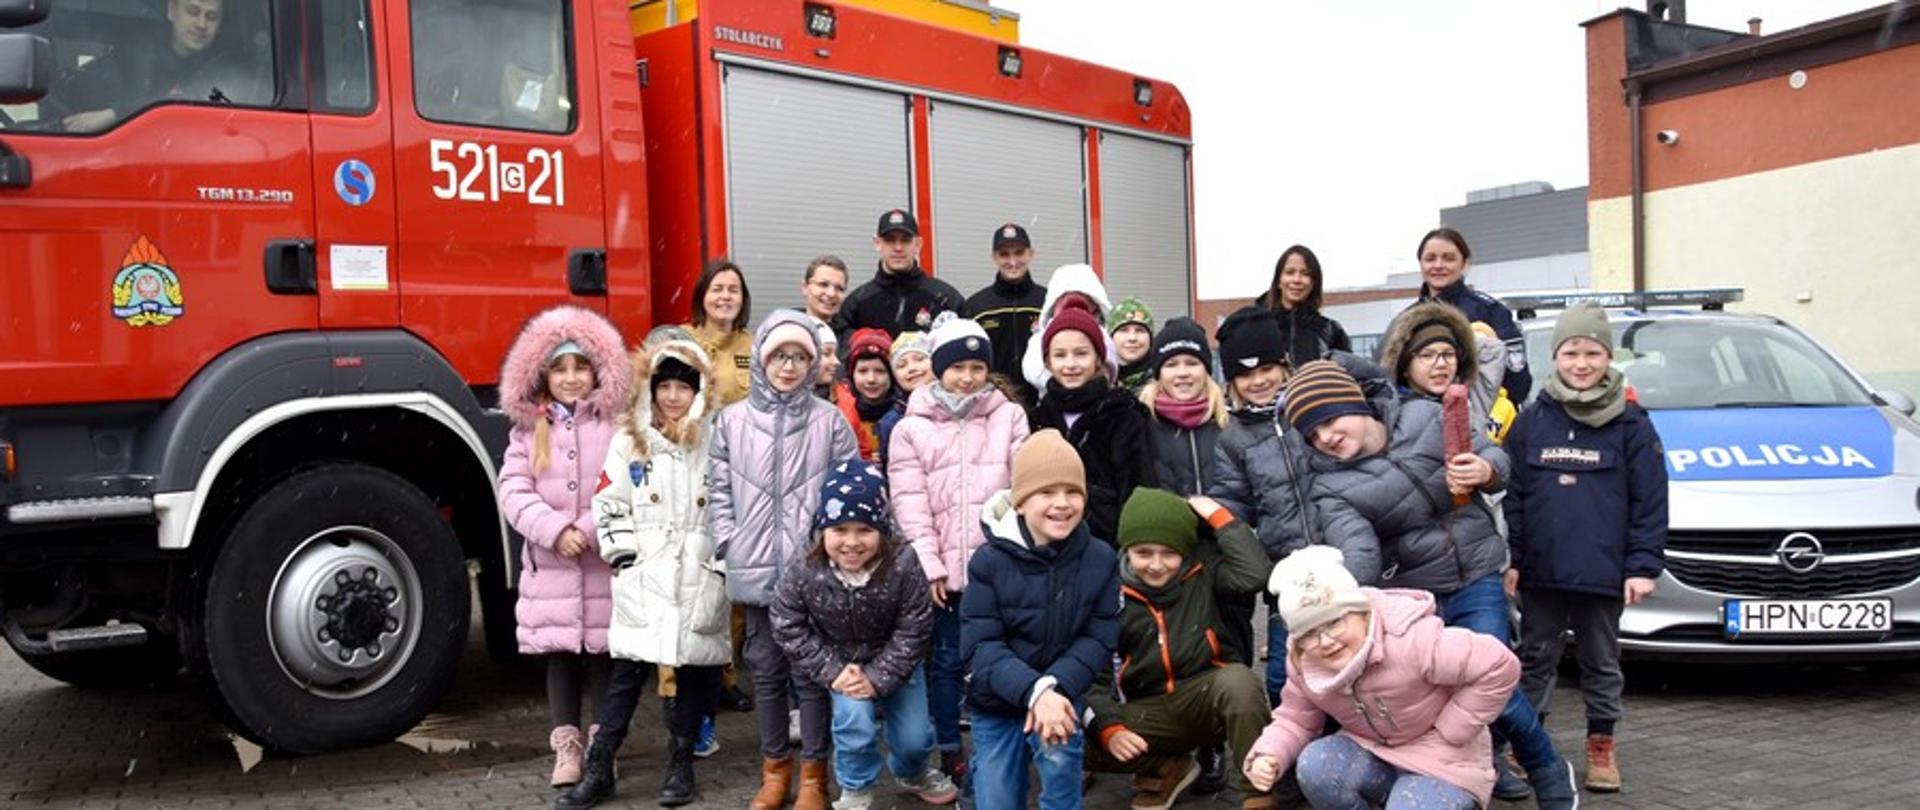 Zdjęcie przedstawia biorące udział w projekcie dzieci wraz z opiekunami. W tle samochód pożarniczy i policyjny, prowadzący wykłady, umundurowani. Dzieci uśmiechnięte, w kurtkach.